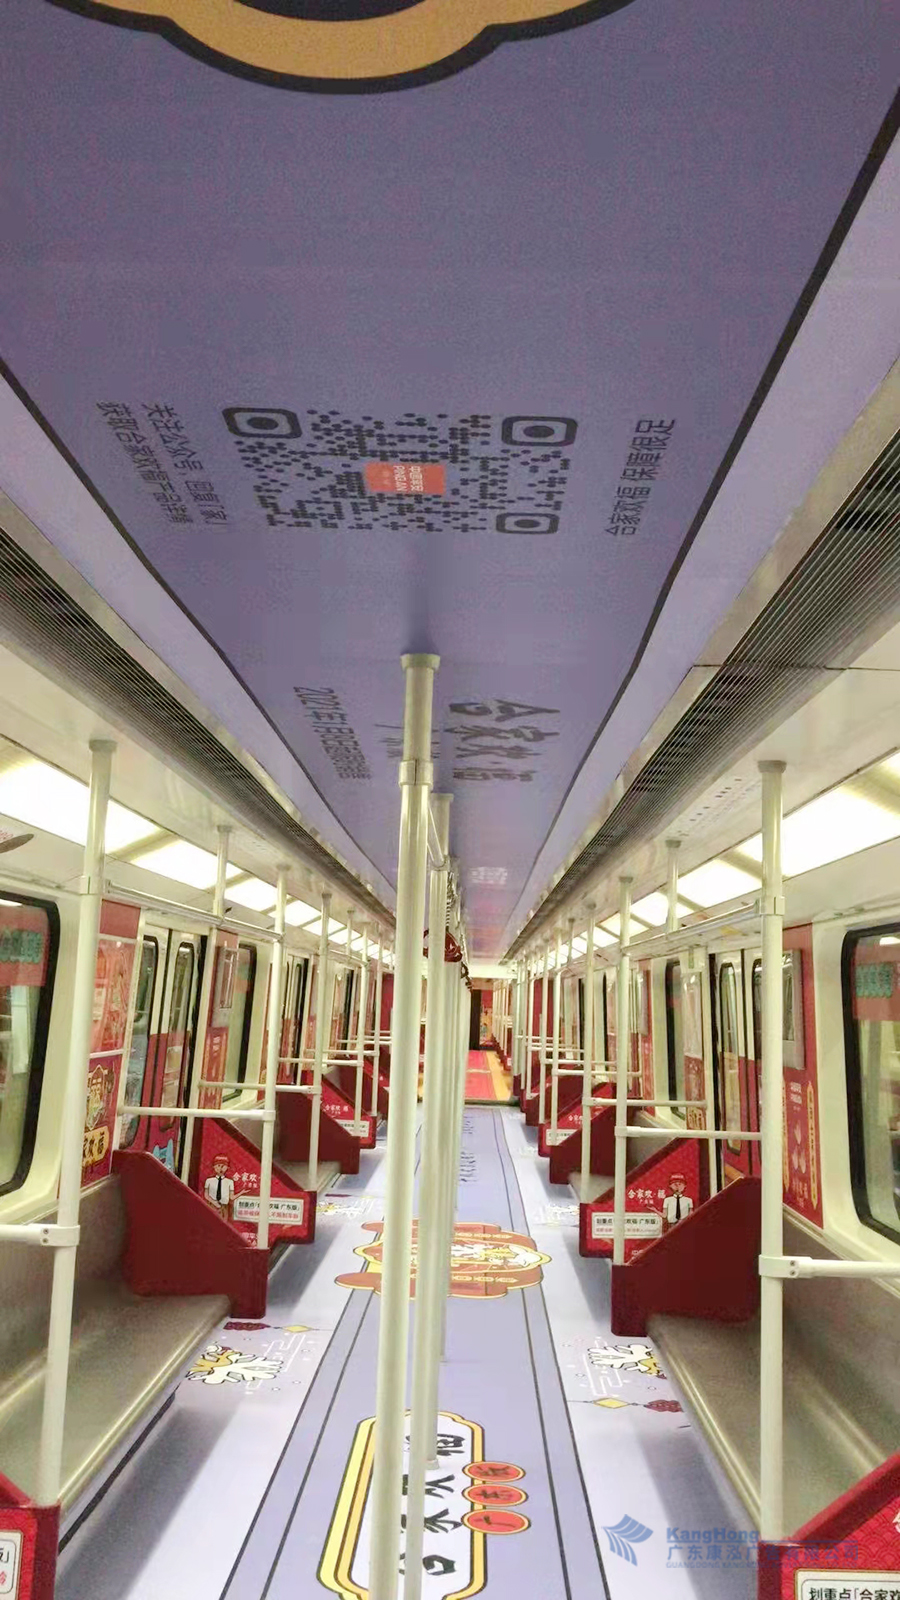 广州地铁中国平安号内包车广告制作安装项目